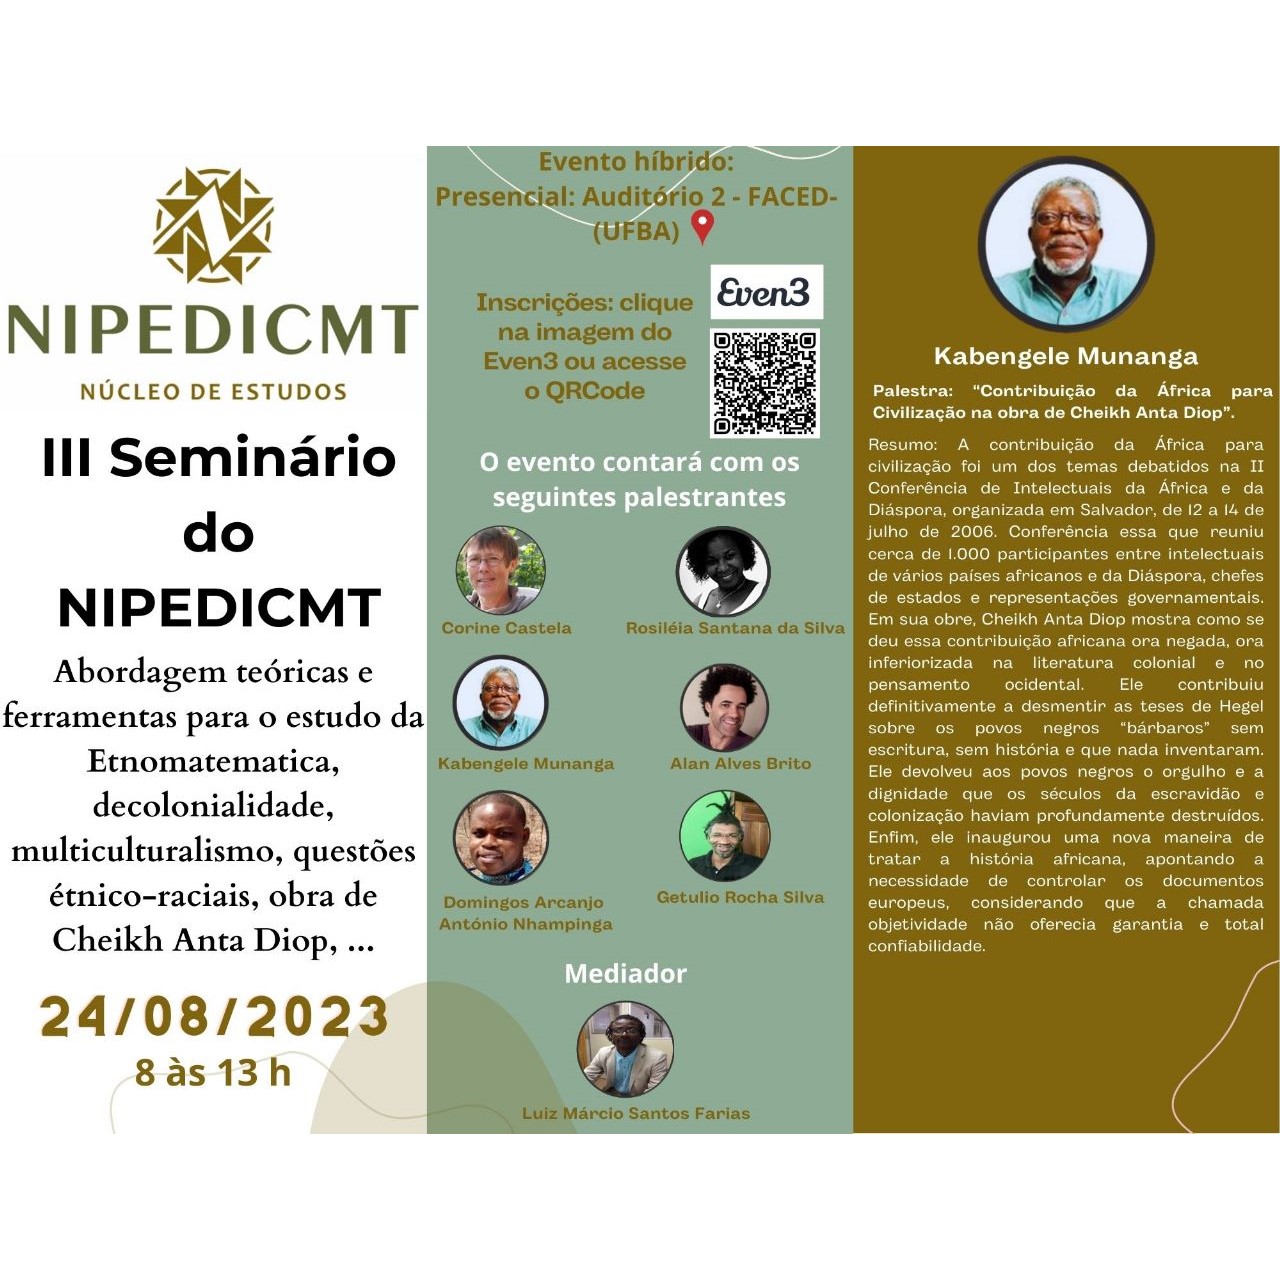 III Seminário do NIPEDICMT acontece em agosto com mediação de docente do IHAC